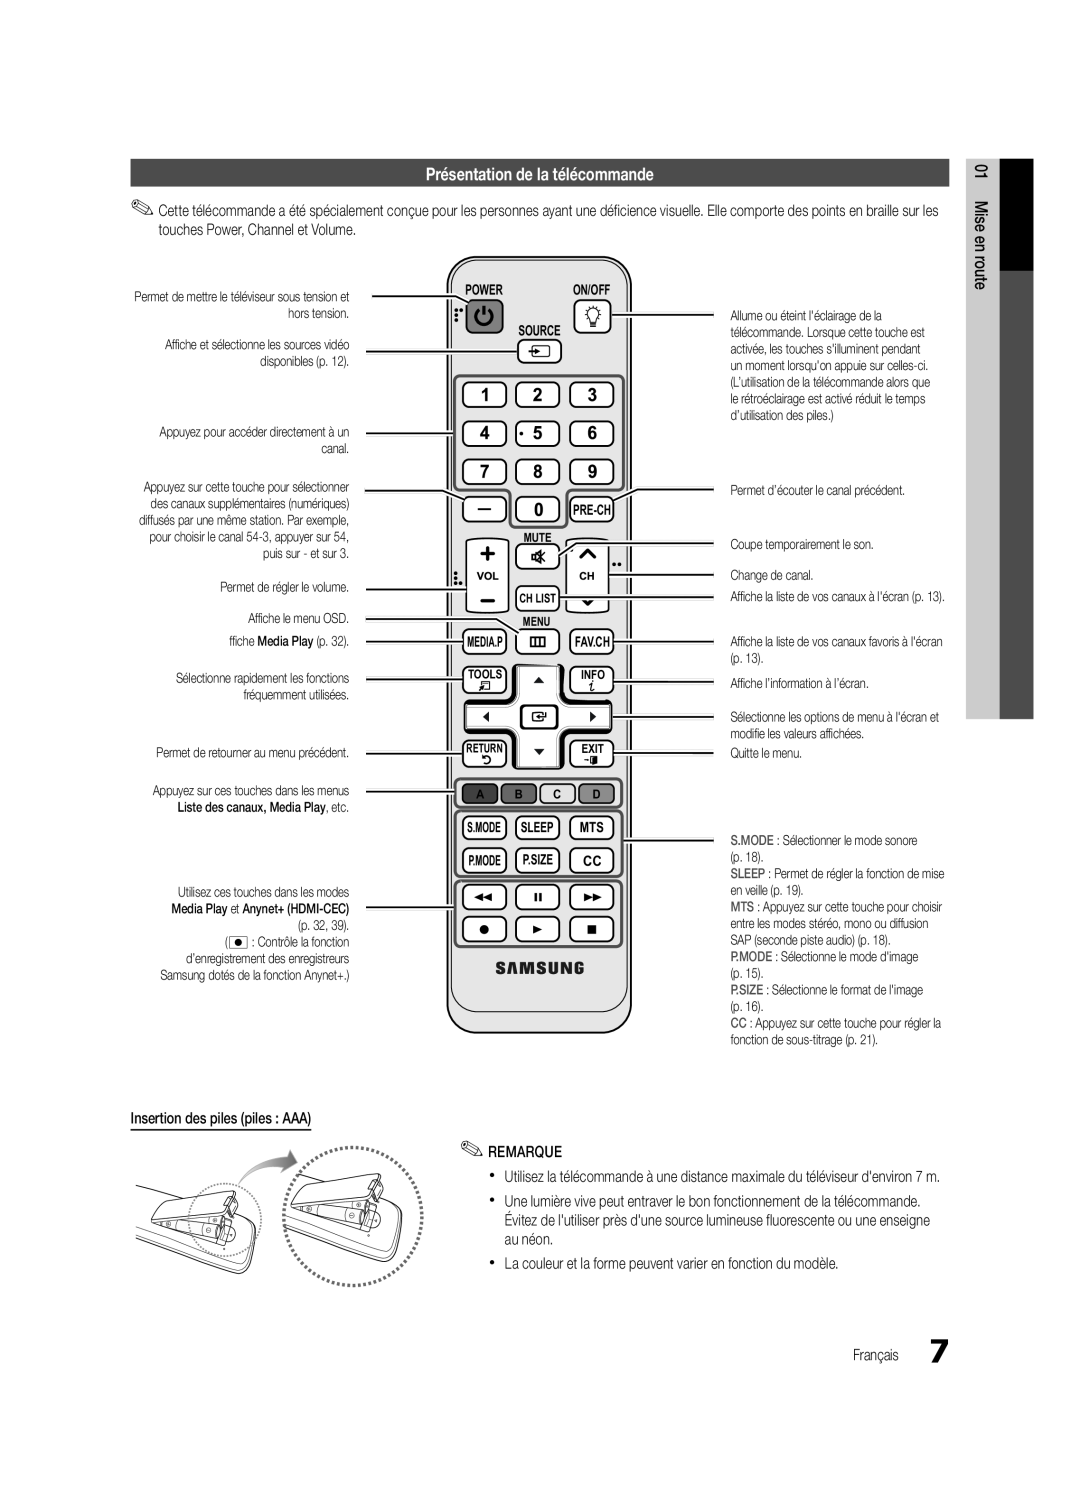 Samsung UC5000-ZC Présentation de la télécommande, Power On/Off Source Pre-Ch, S.Mode Sleep Mts P.Mode P.Size Cc 